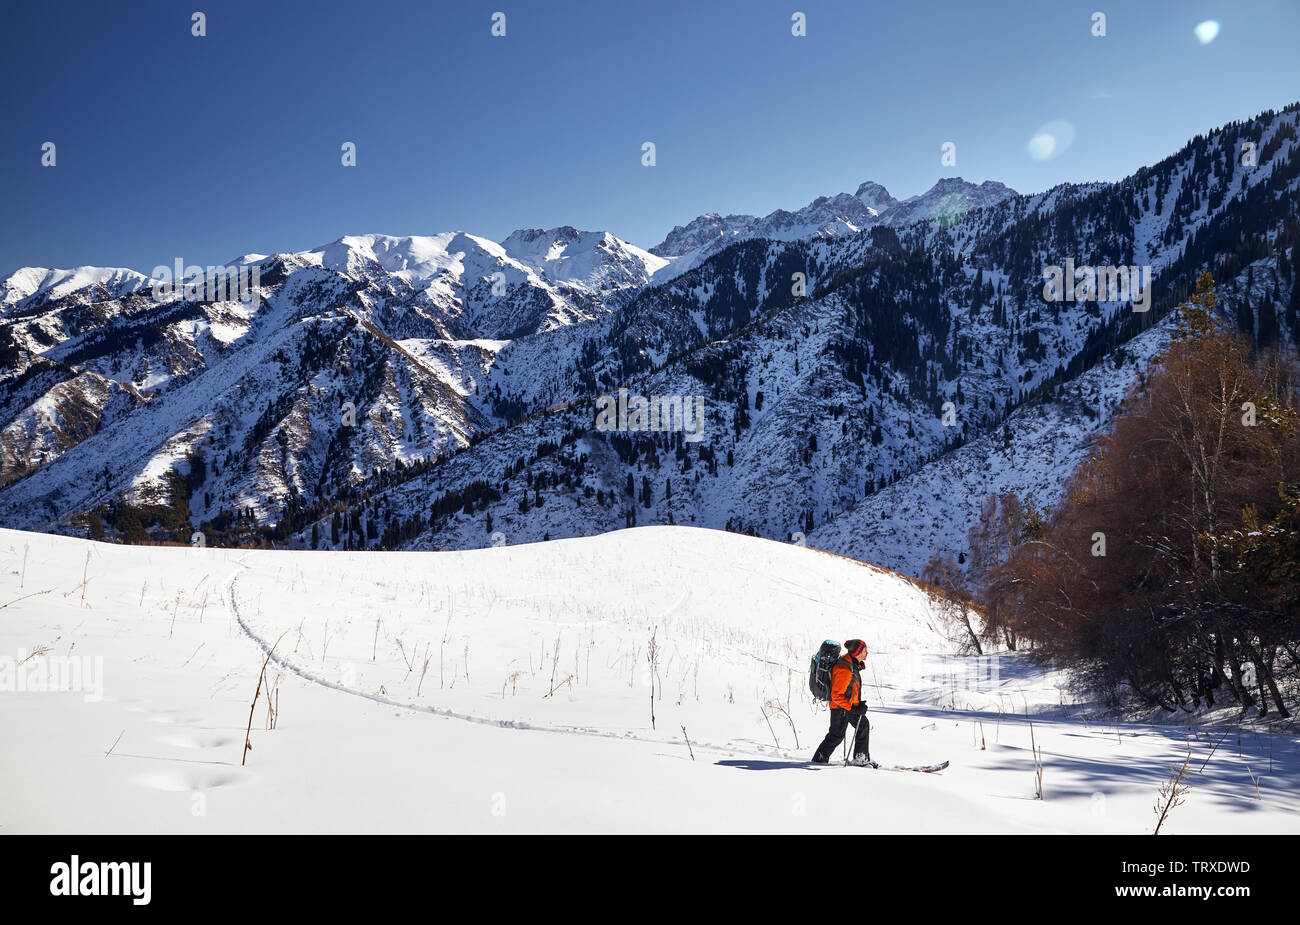 Man in orange jacket skiing on fresh powder snow in the mountains near Almaty, Kazakhstan Stock Photo